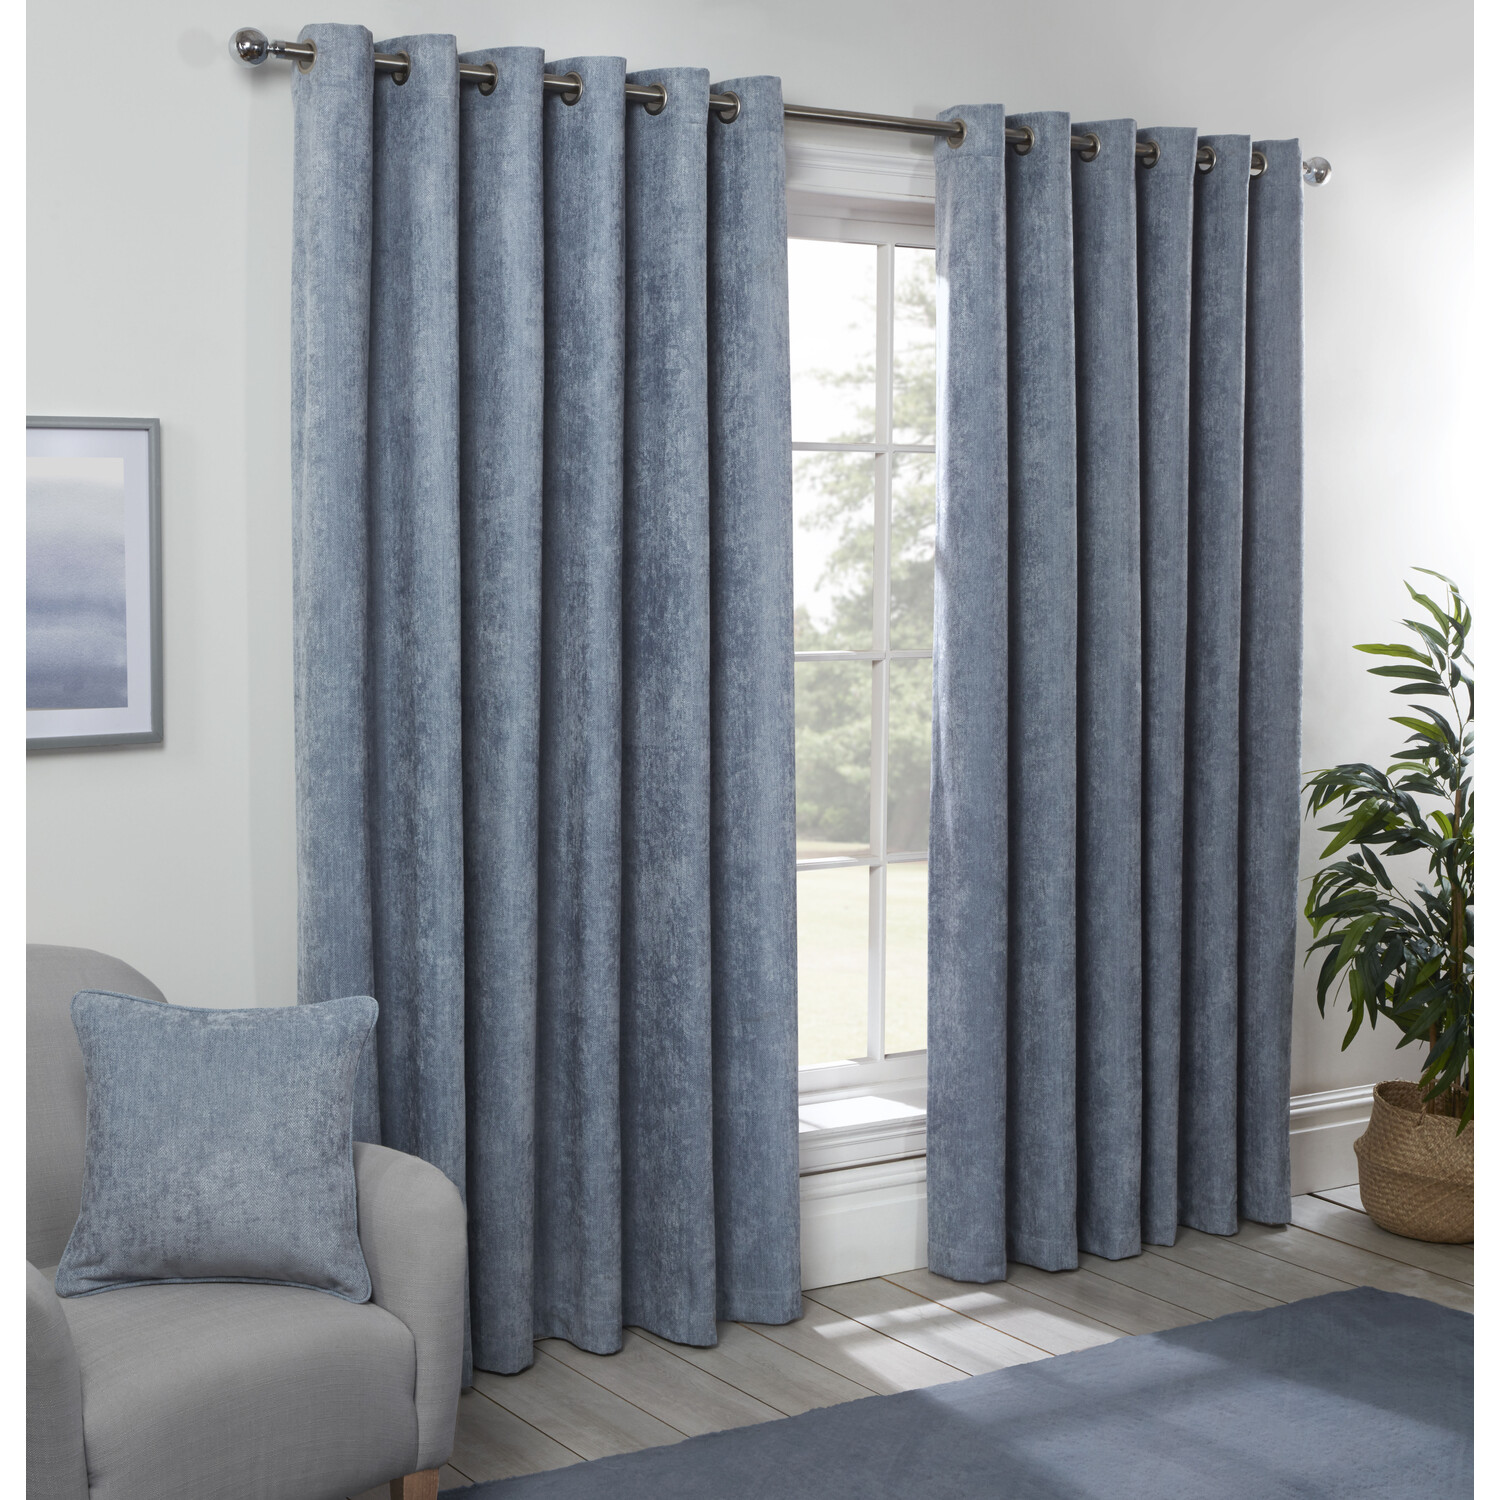 Divante Powder Blue Alden Thermal Curtains 183 x 168cm Image 1